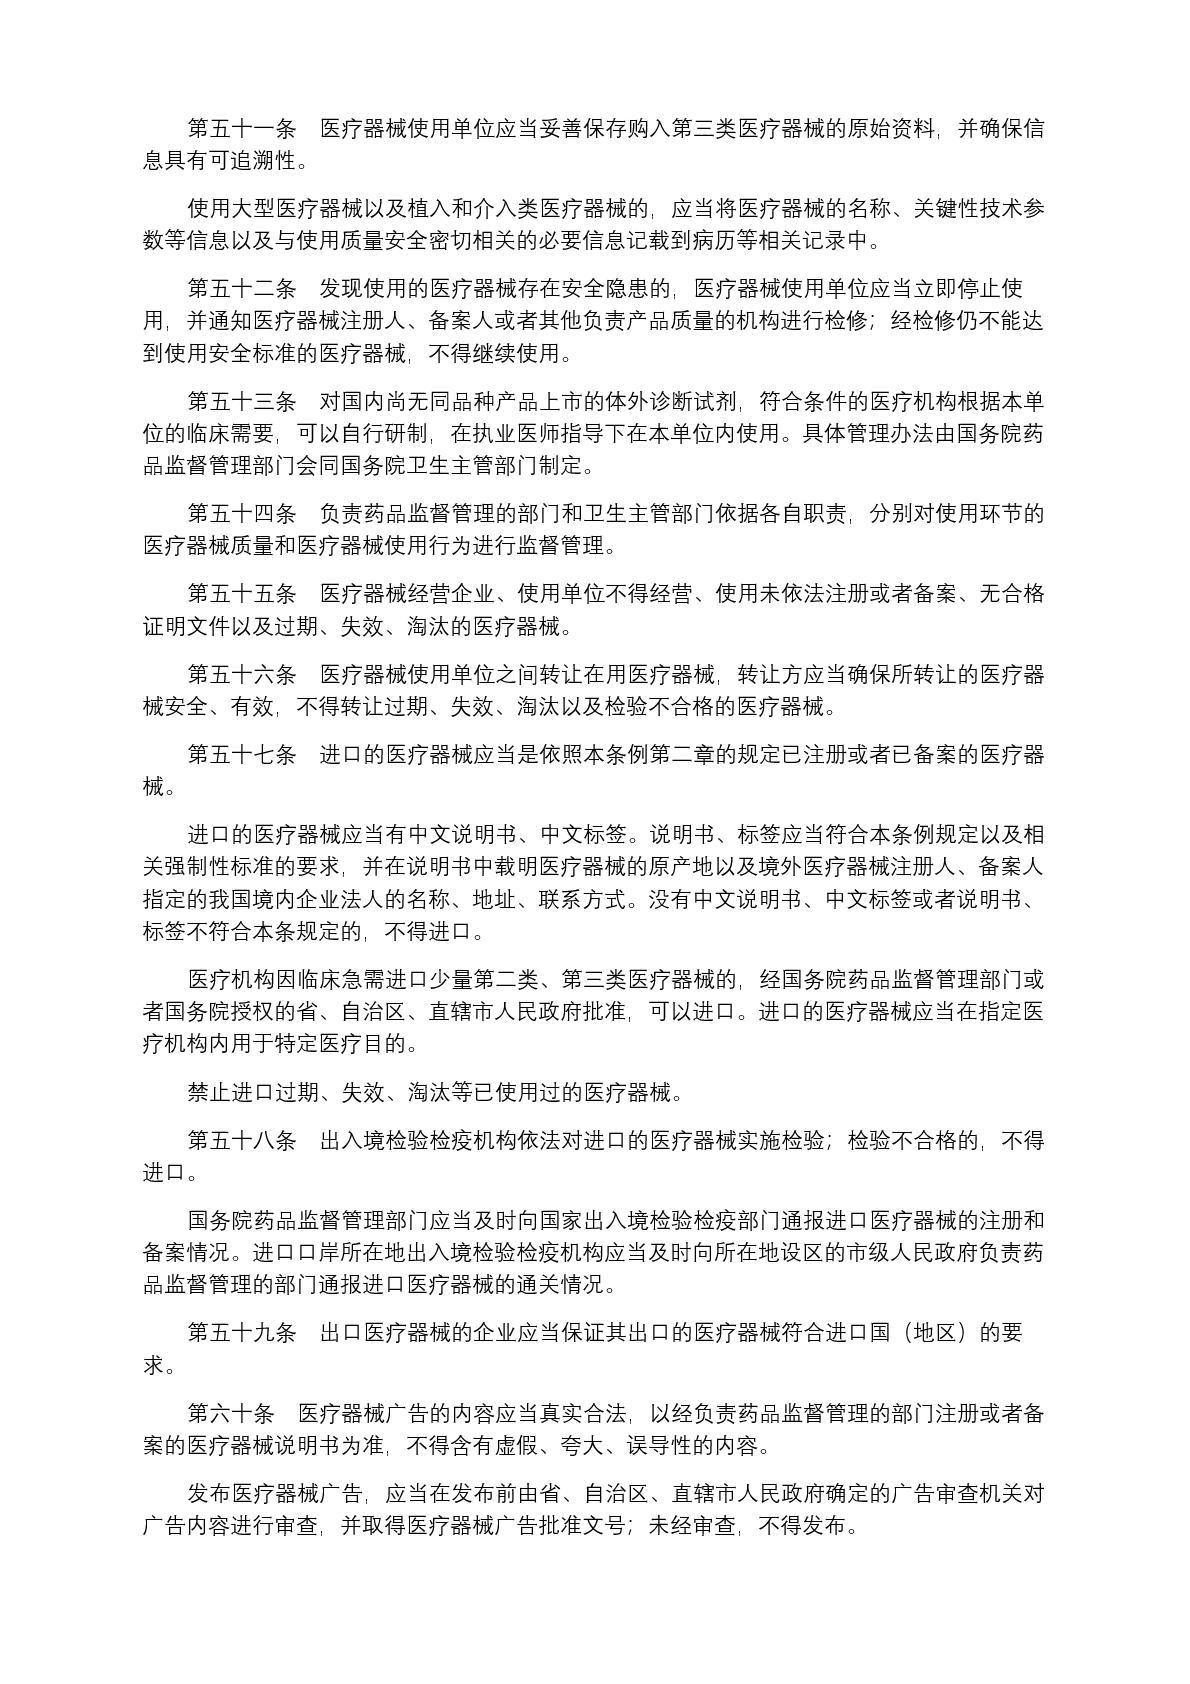 中华人民共和国国务院令第739号(1) (1)-010.jpg